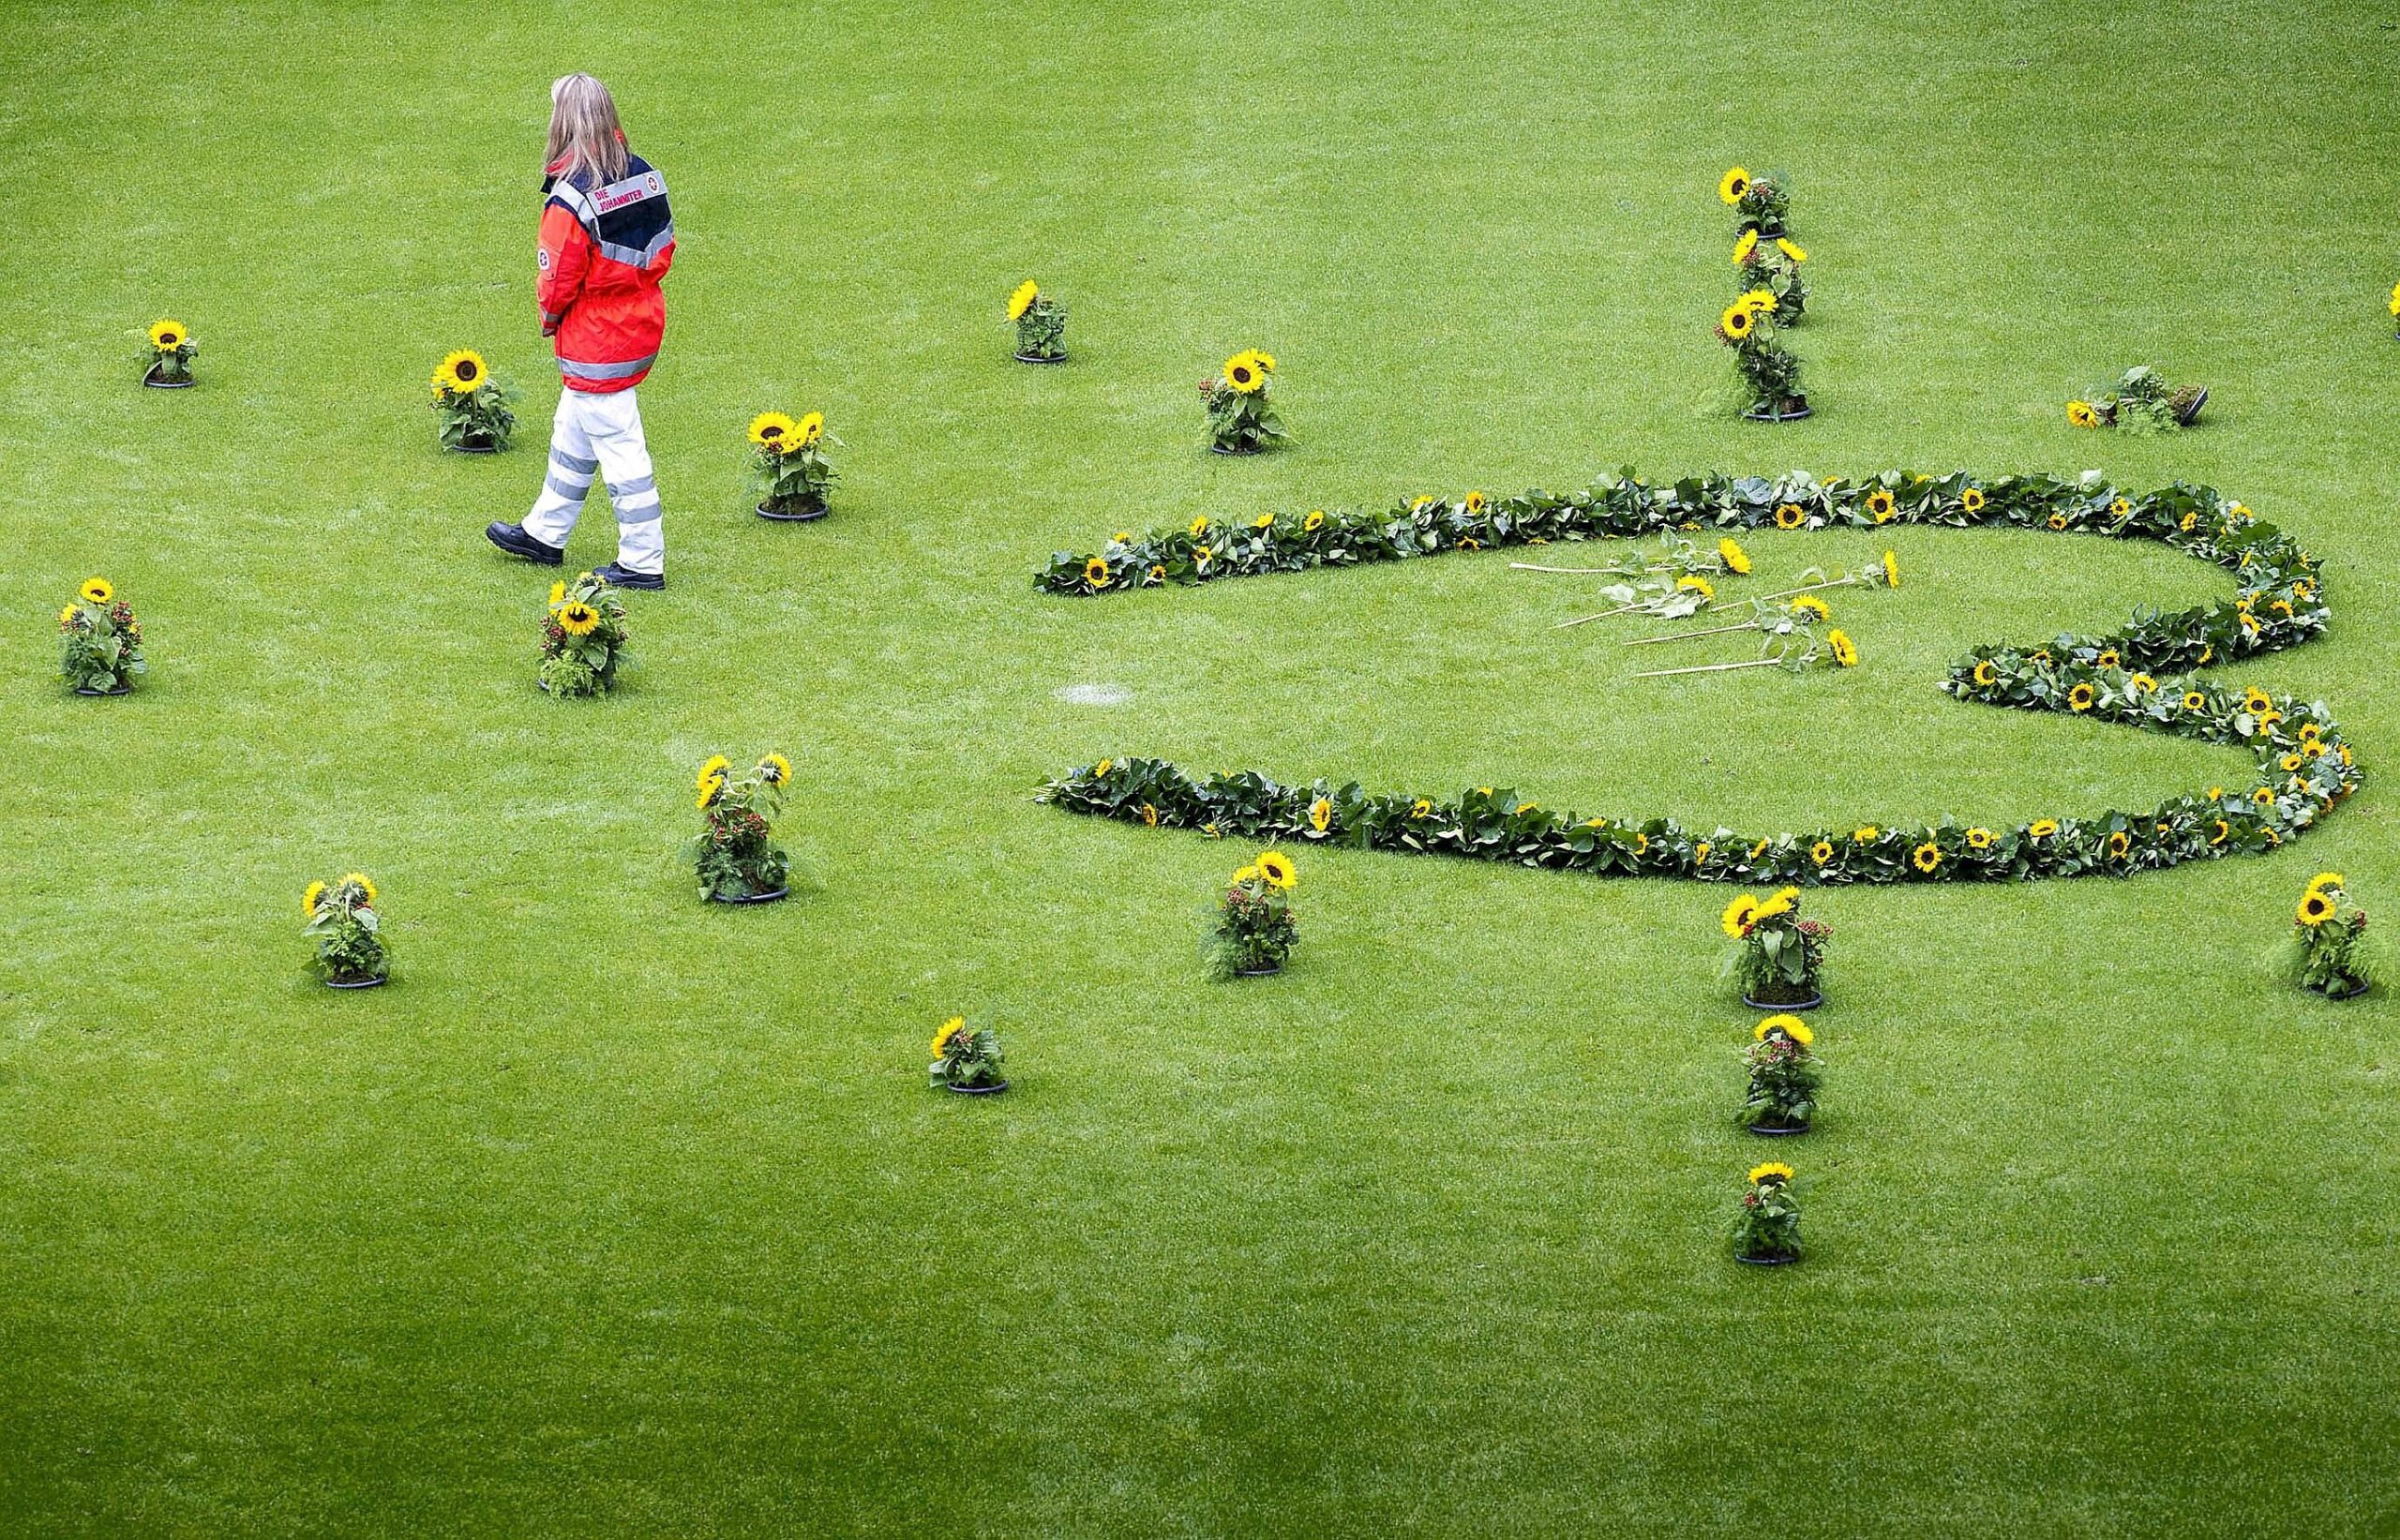 Helfer der Rettungsdienste legten in der MSV-Arena für jedes Todesopfer eine Sonneblume nieder. Bild: Ilja Hoepping / WAZ FotoPool